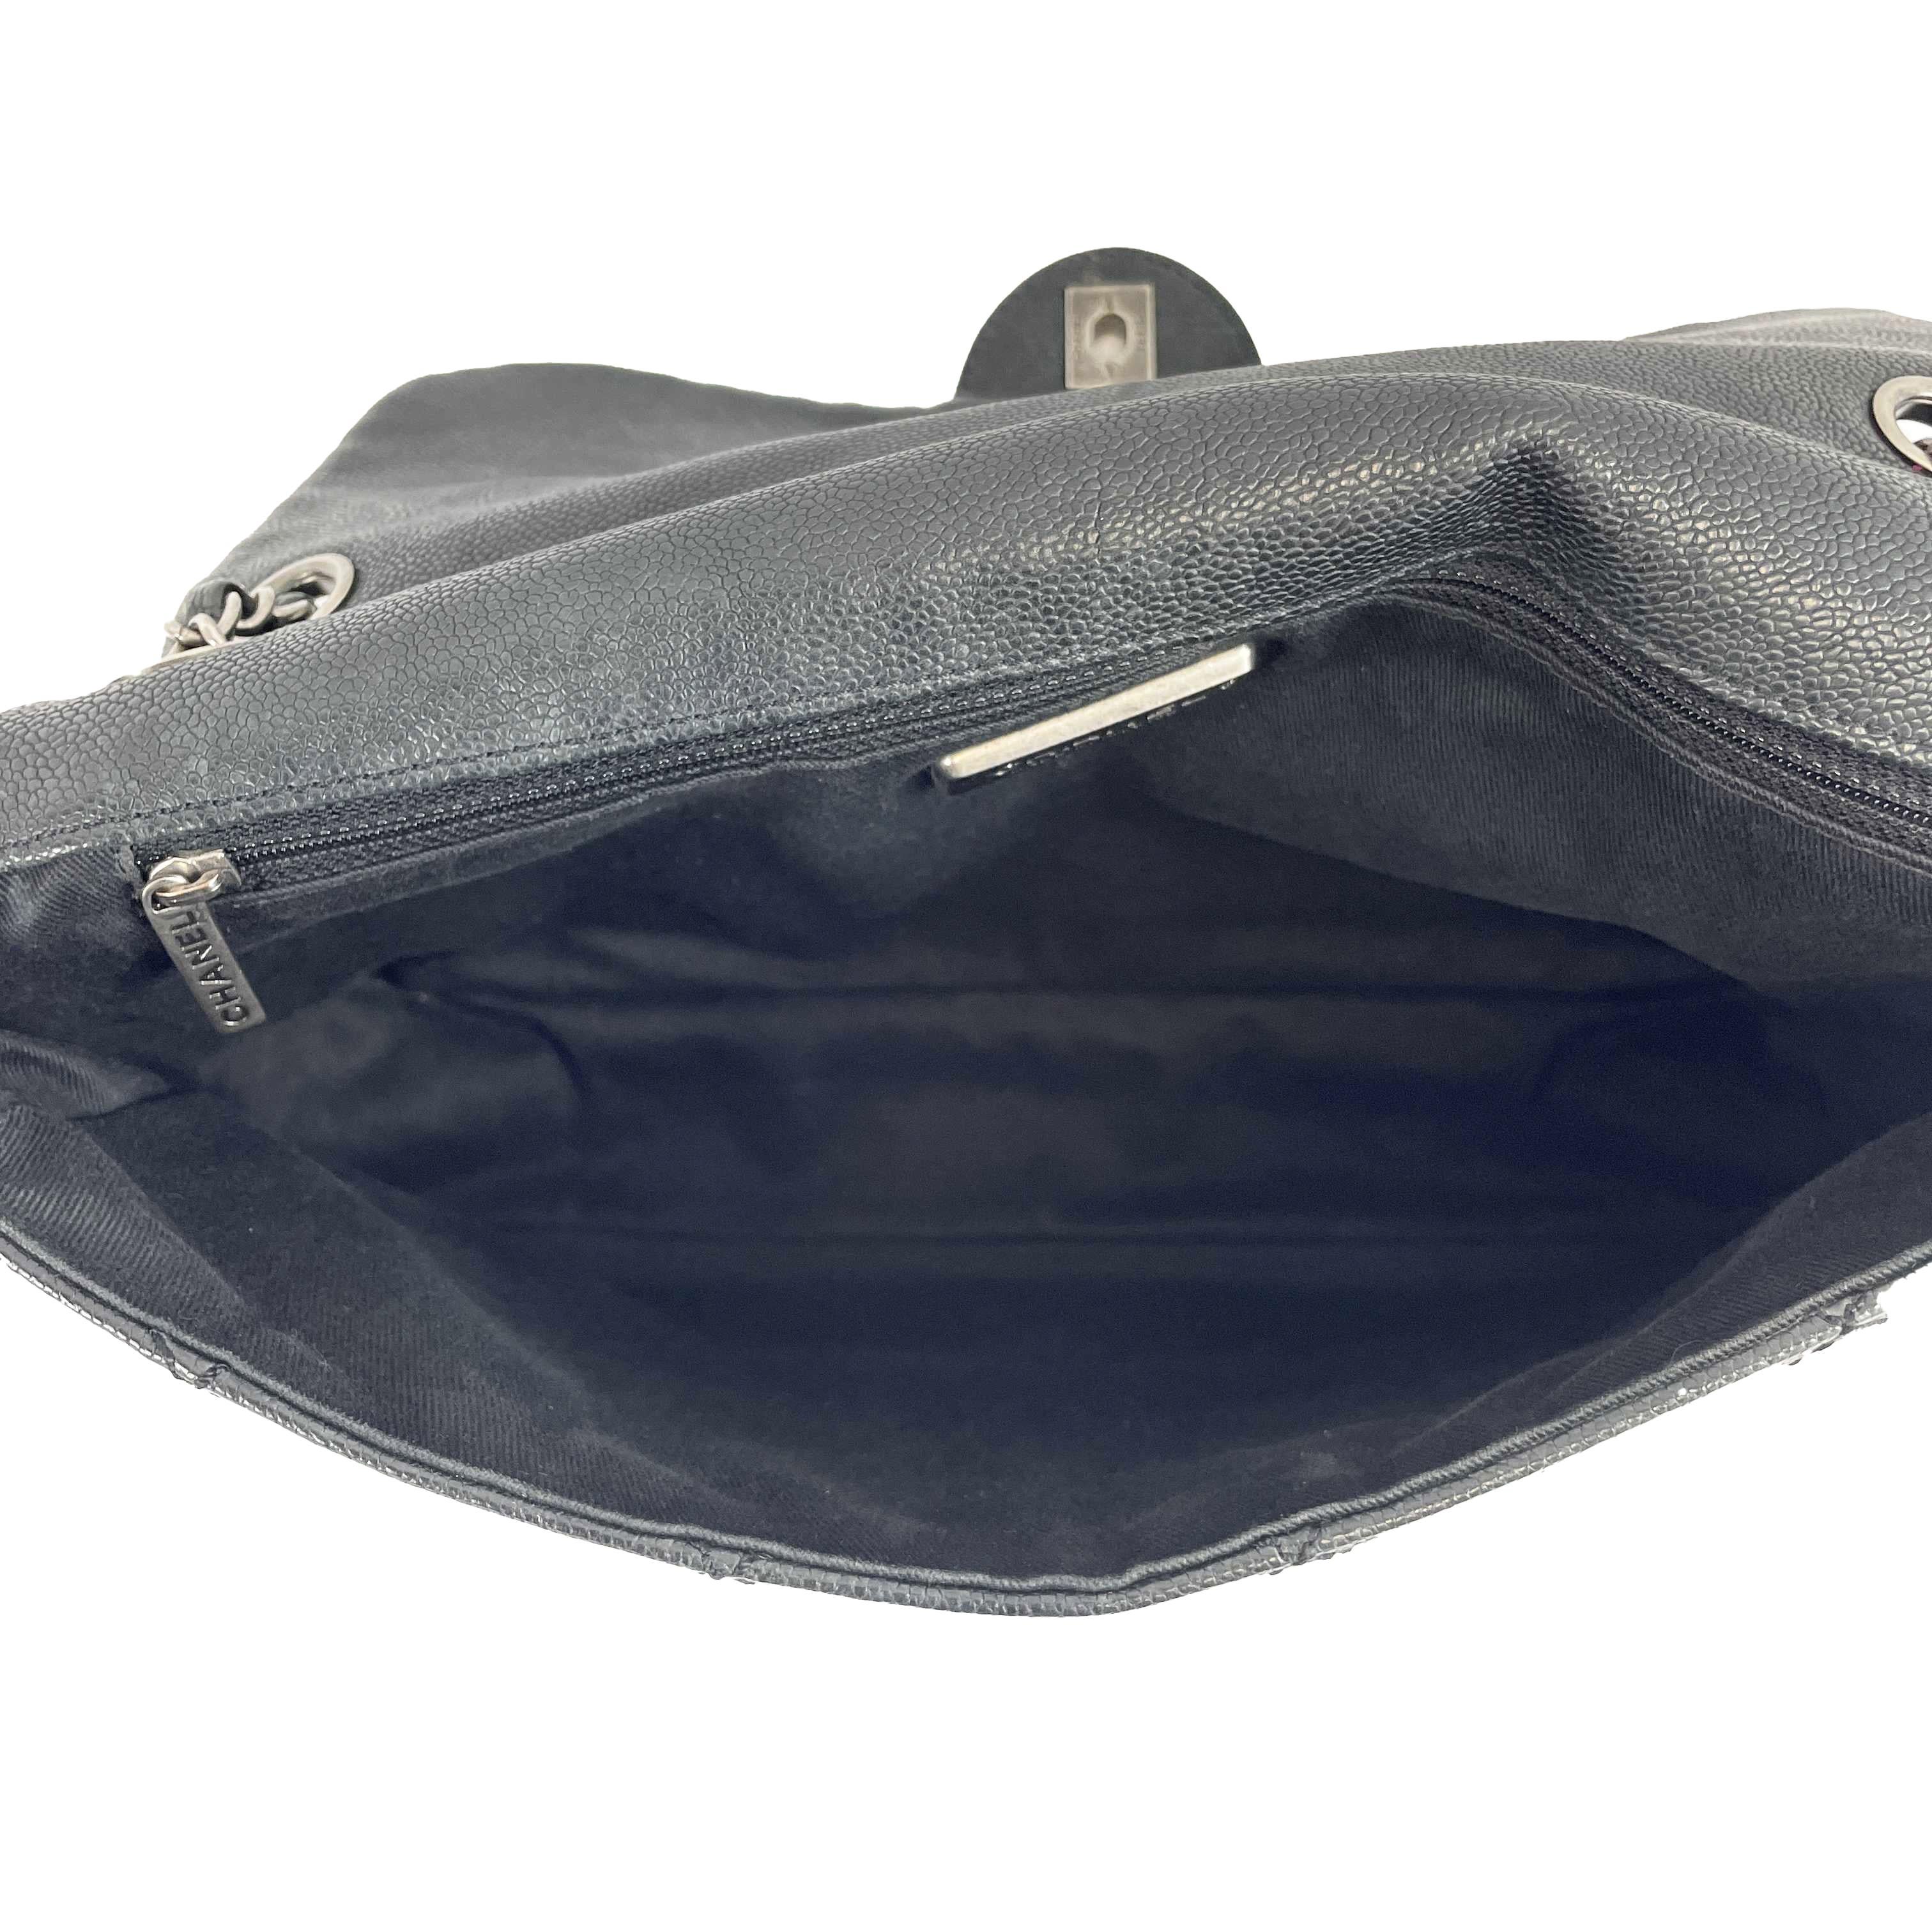 	CHANEL - CC Ligne Flap Large Bag Black / Silver Caviar Leather Shoulder Bag 11